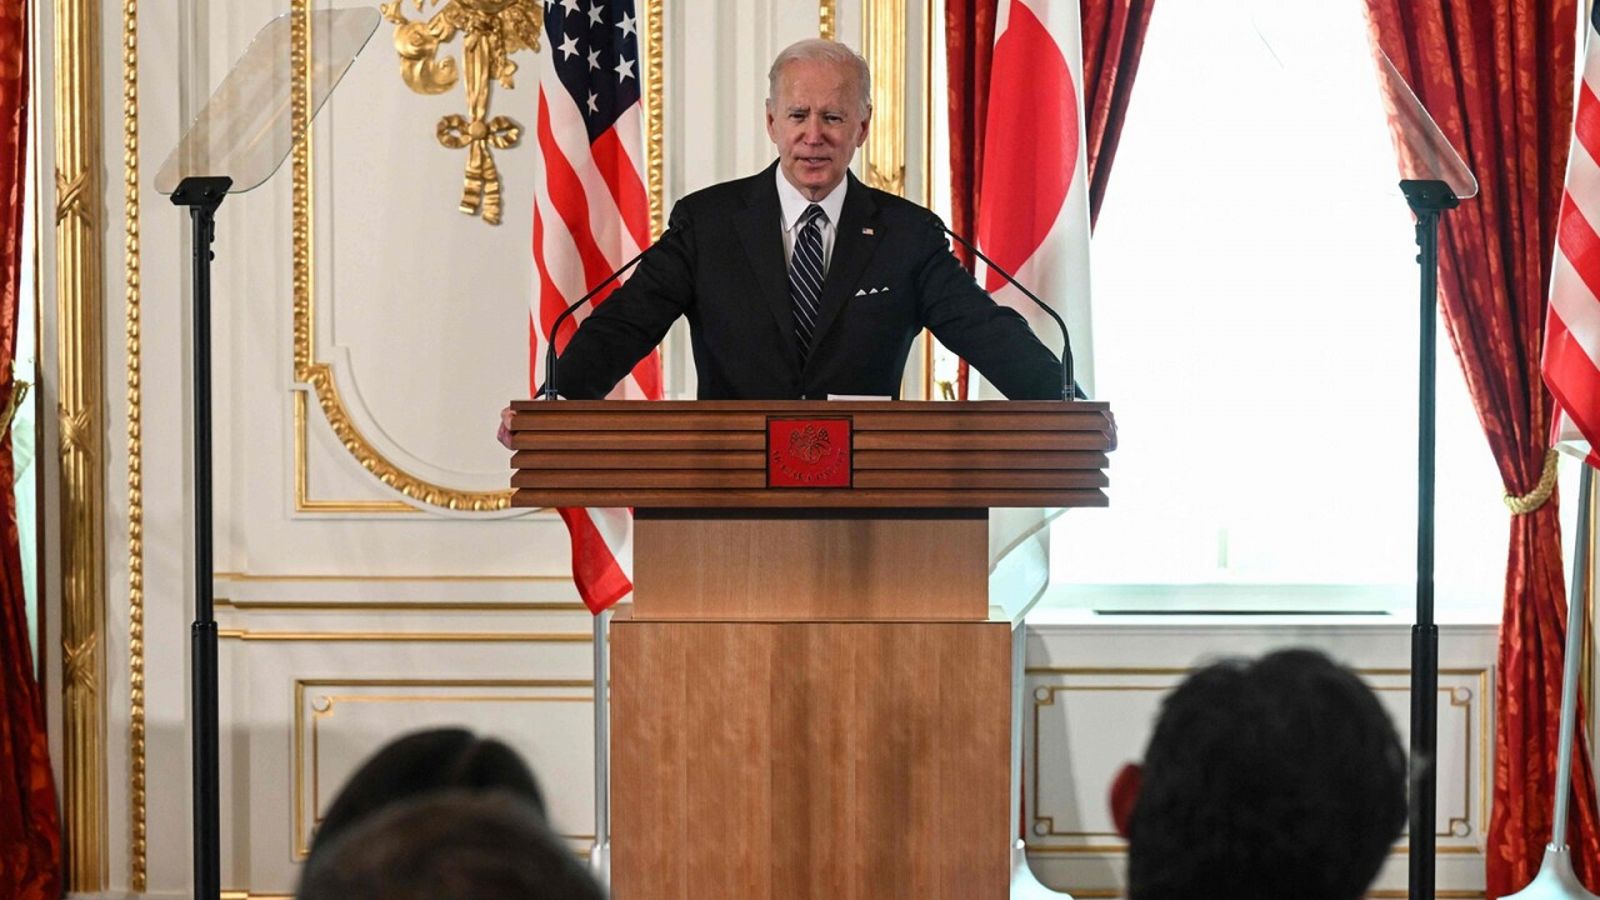 El presidente de EE.UU. Joe Biden, durante su rueda de prensa en Tokio, Japón, el 23 de mayo de 2022. SAUL LOEB / AFP